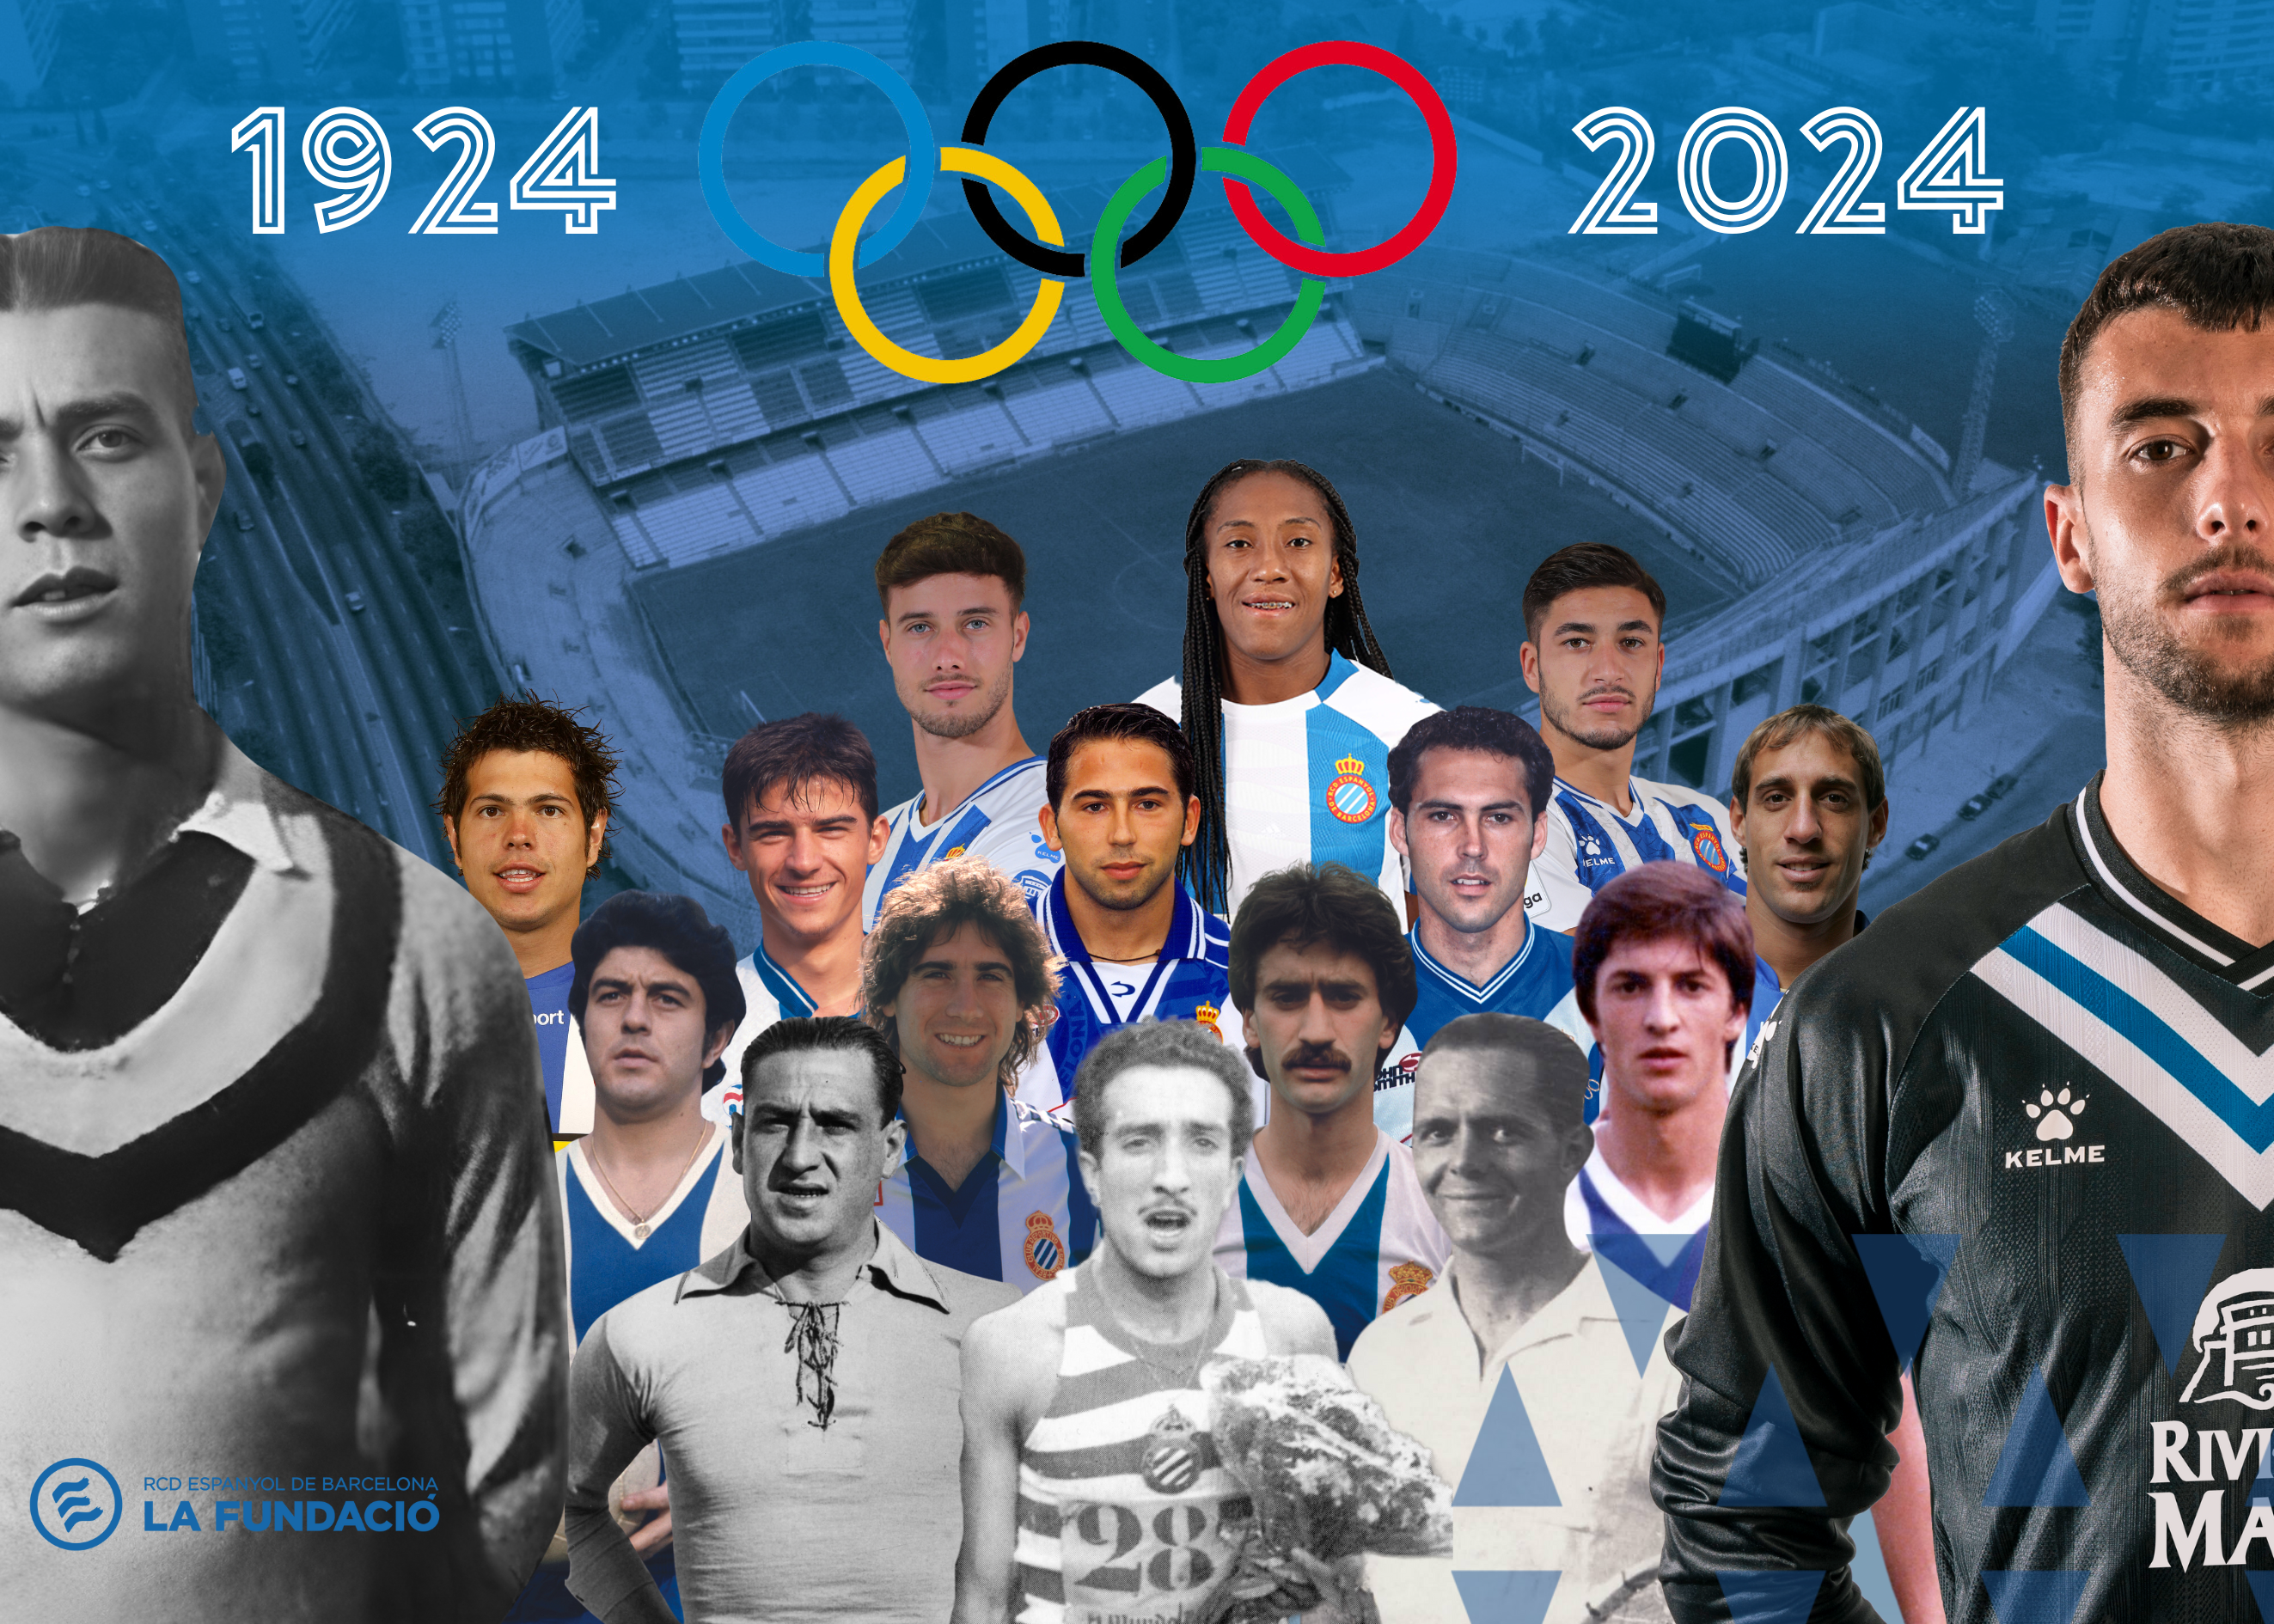 100 anys d’olímpics en blanc-i-blau